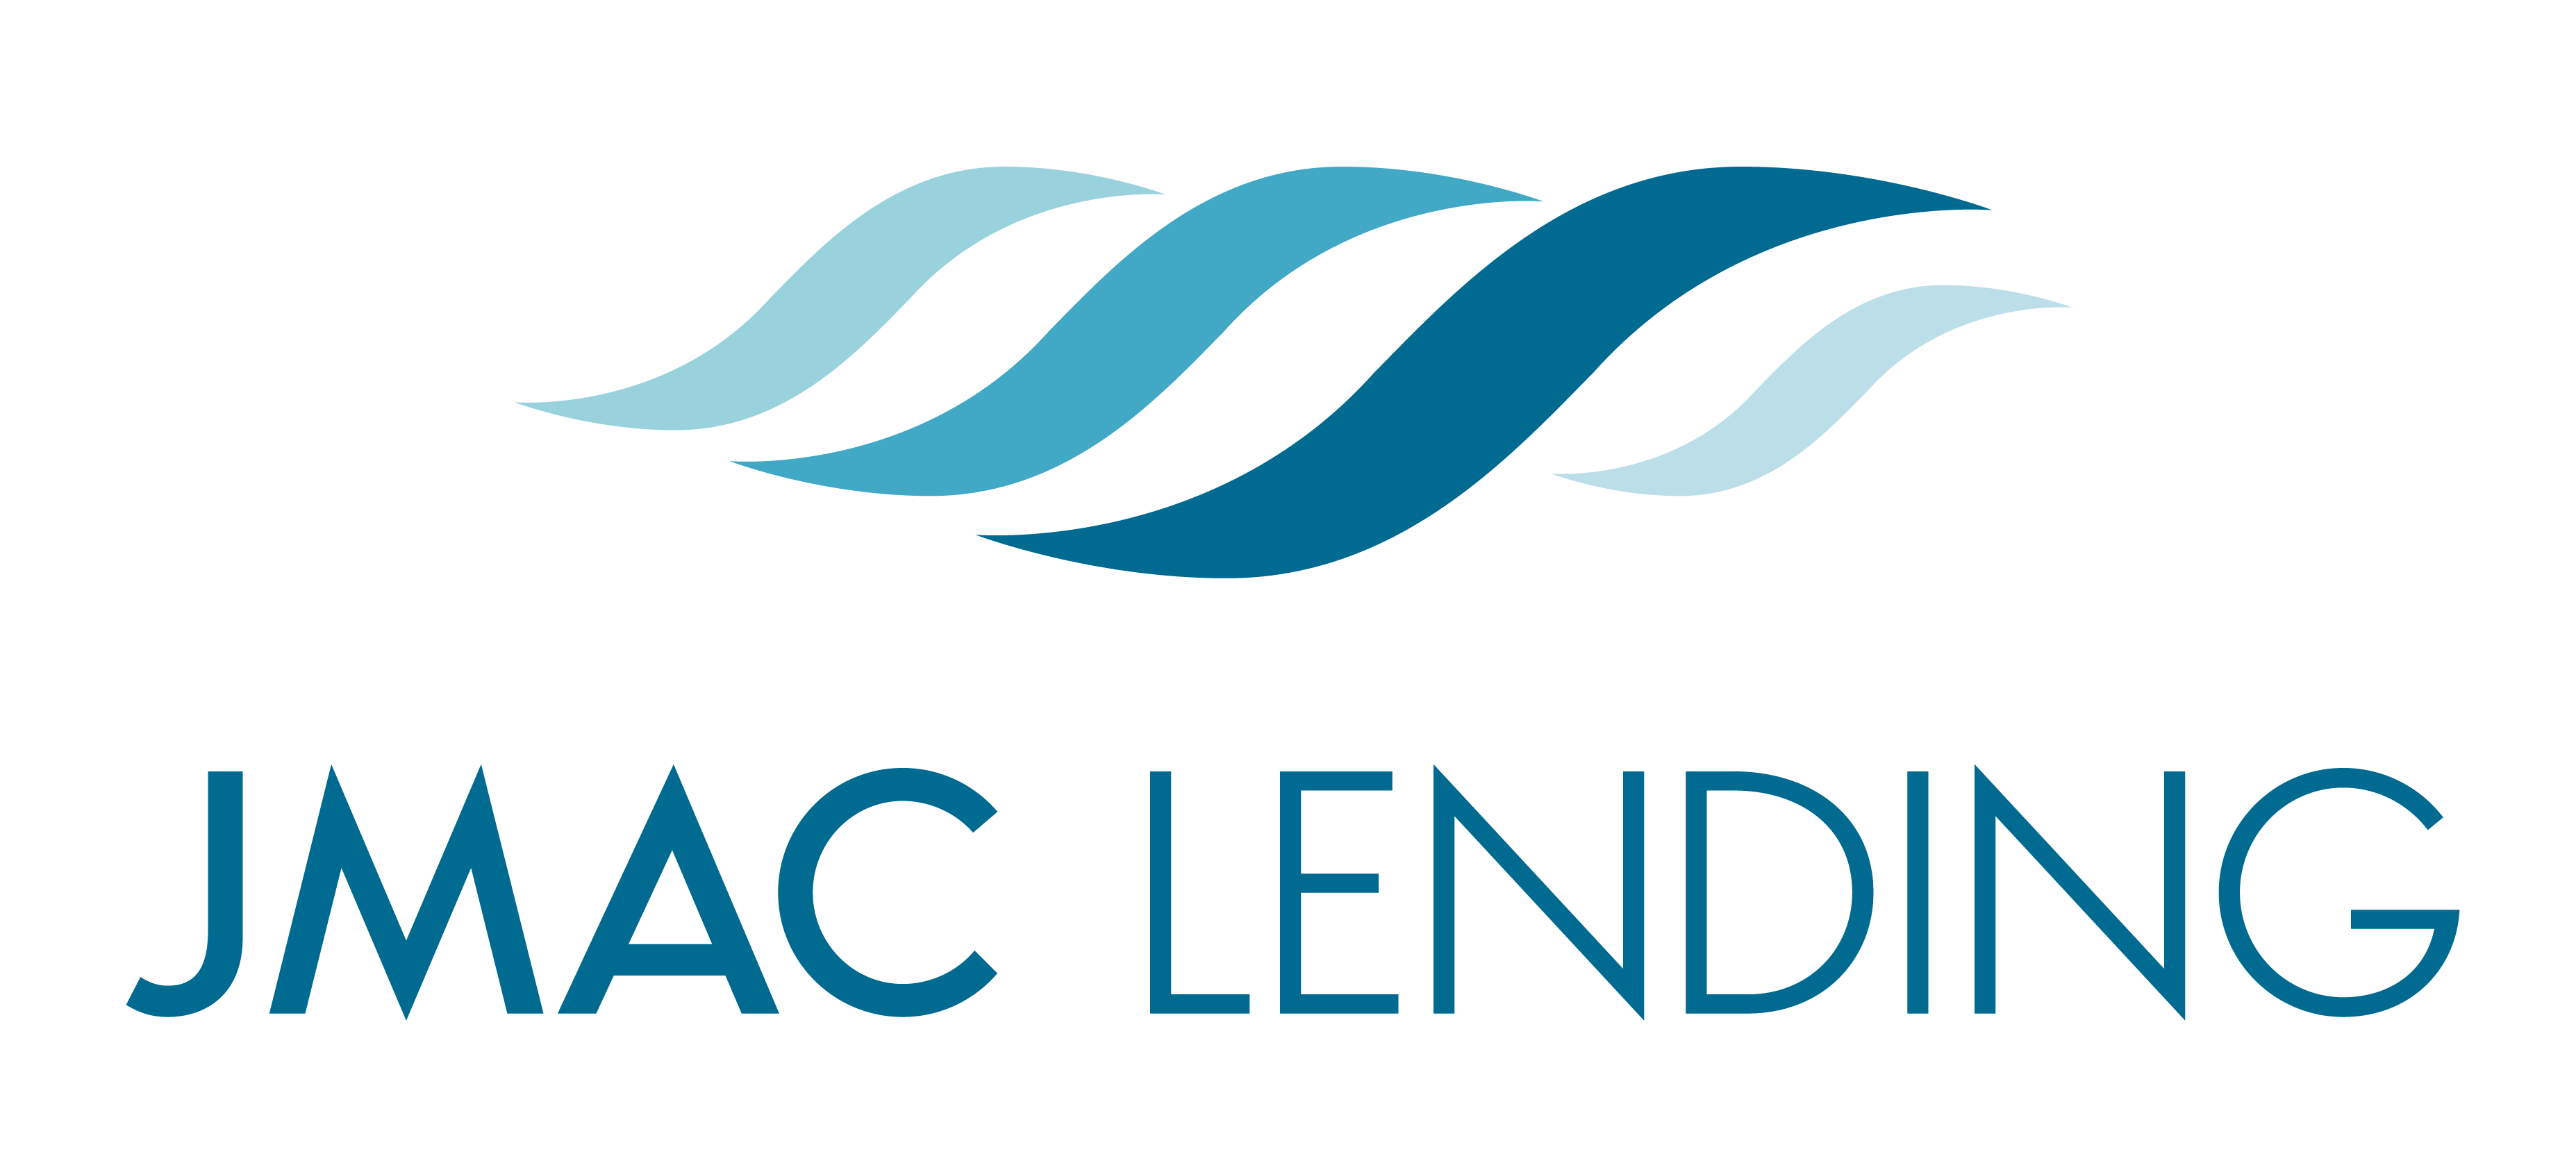 JMAC_Lending